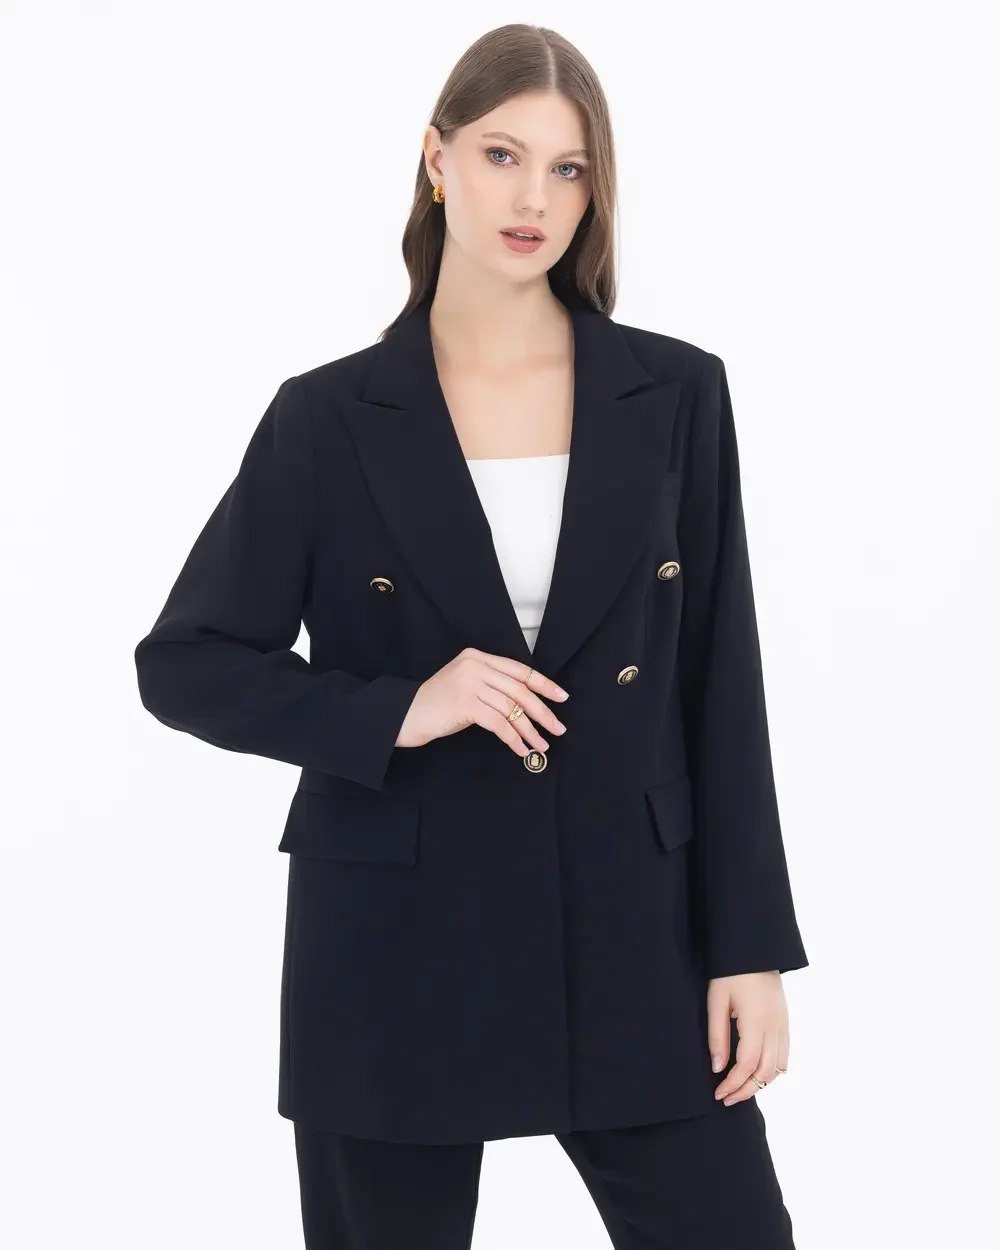 Kadın Büyük Beden Düğme Detaylı Blazer Ceket - Siyah - 1